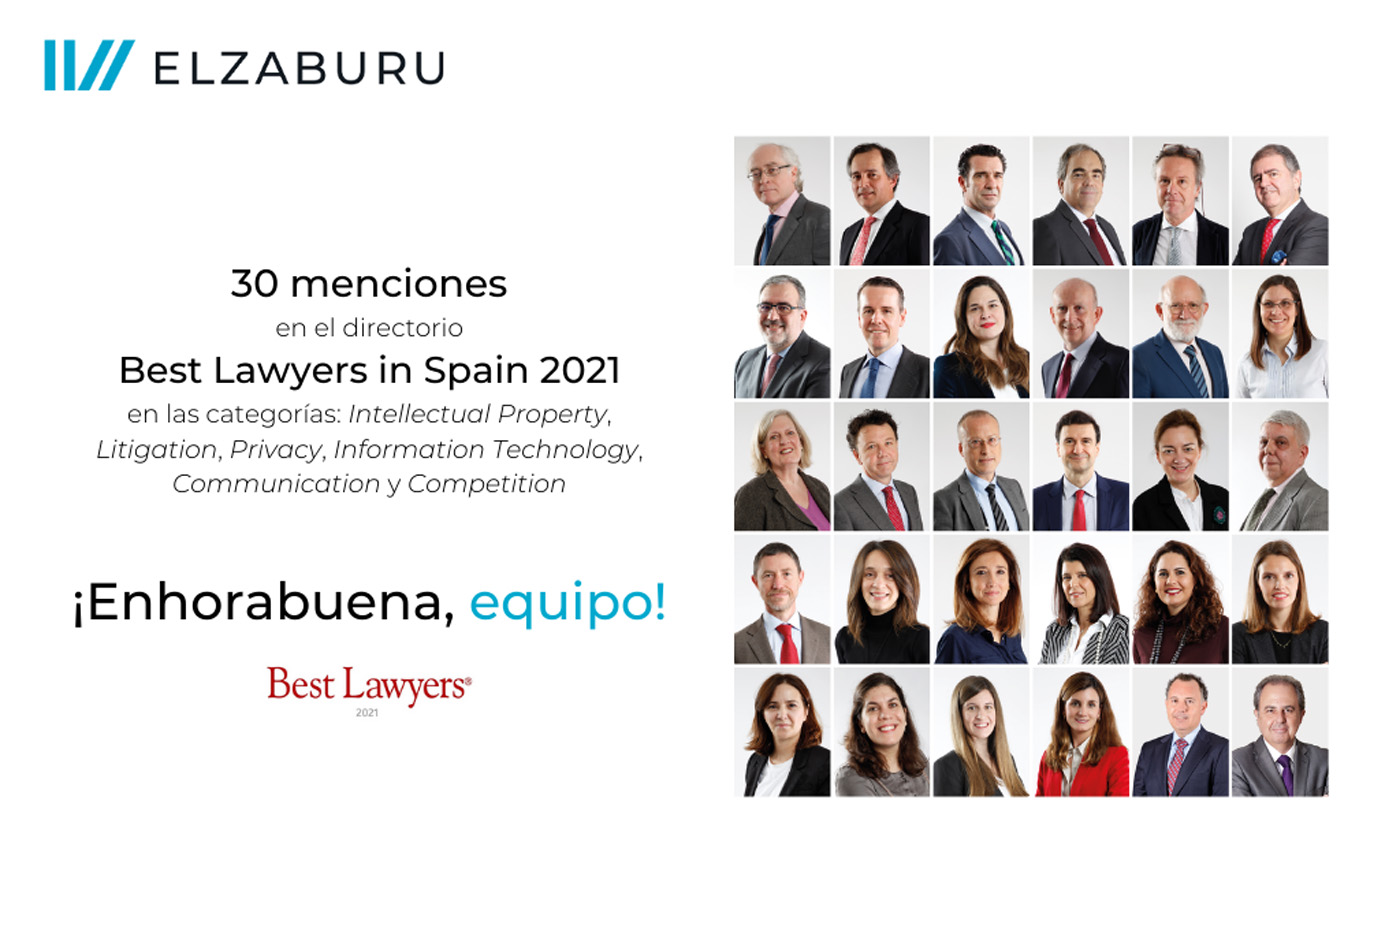 elzaburu logra 30 menciones en el directorio best lawyers in spain 2021 en las categorías de intellectual property, litigation, privacy, information technology, communication y competition